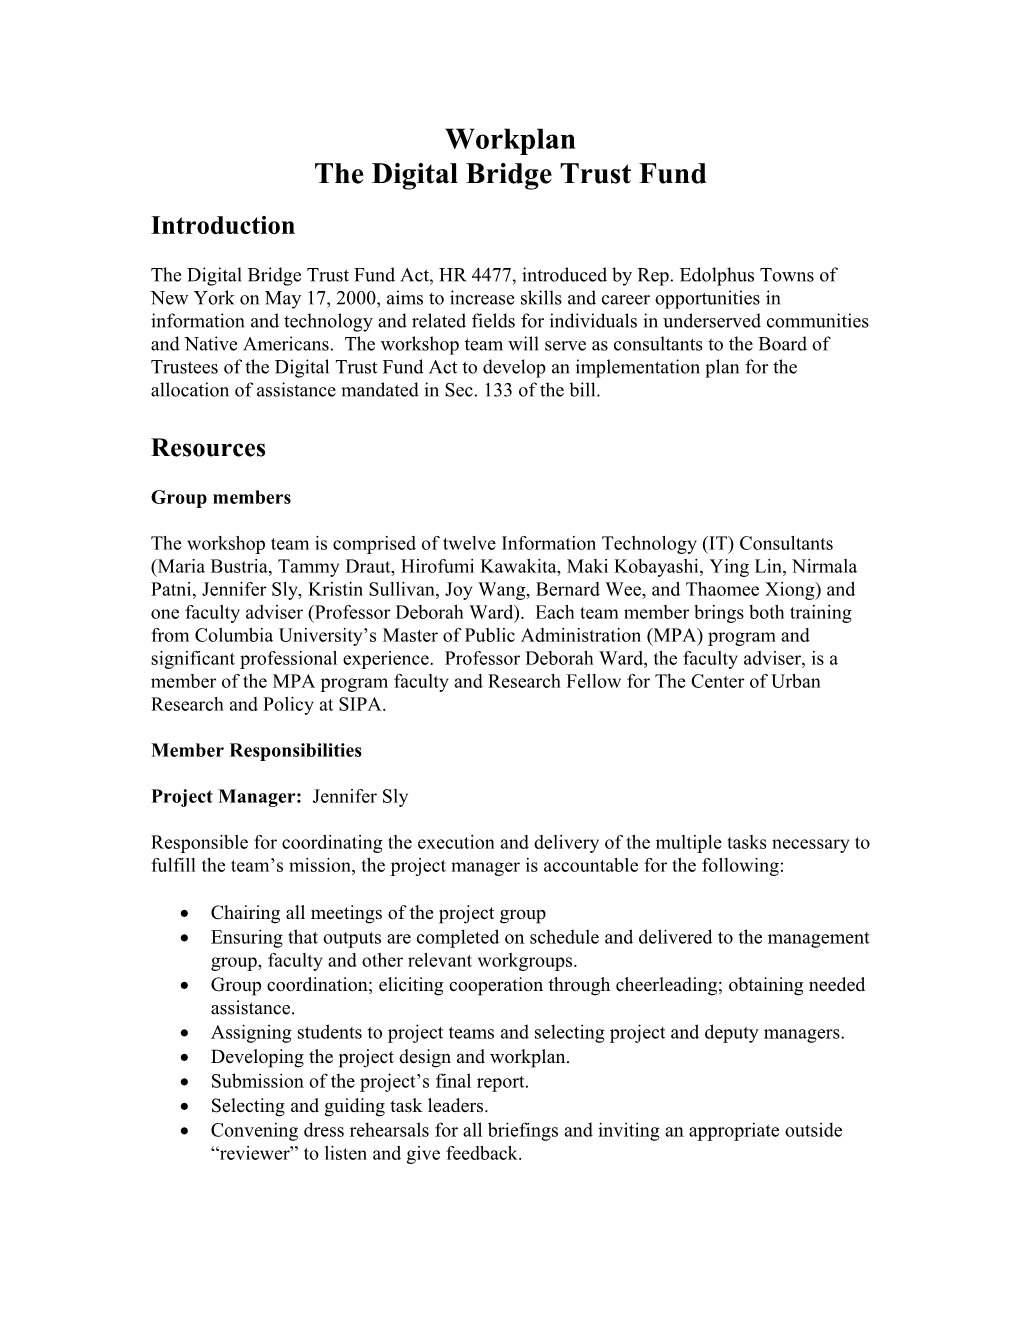 The Digital Bridge Trust Fund